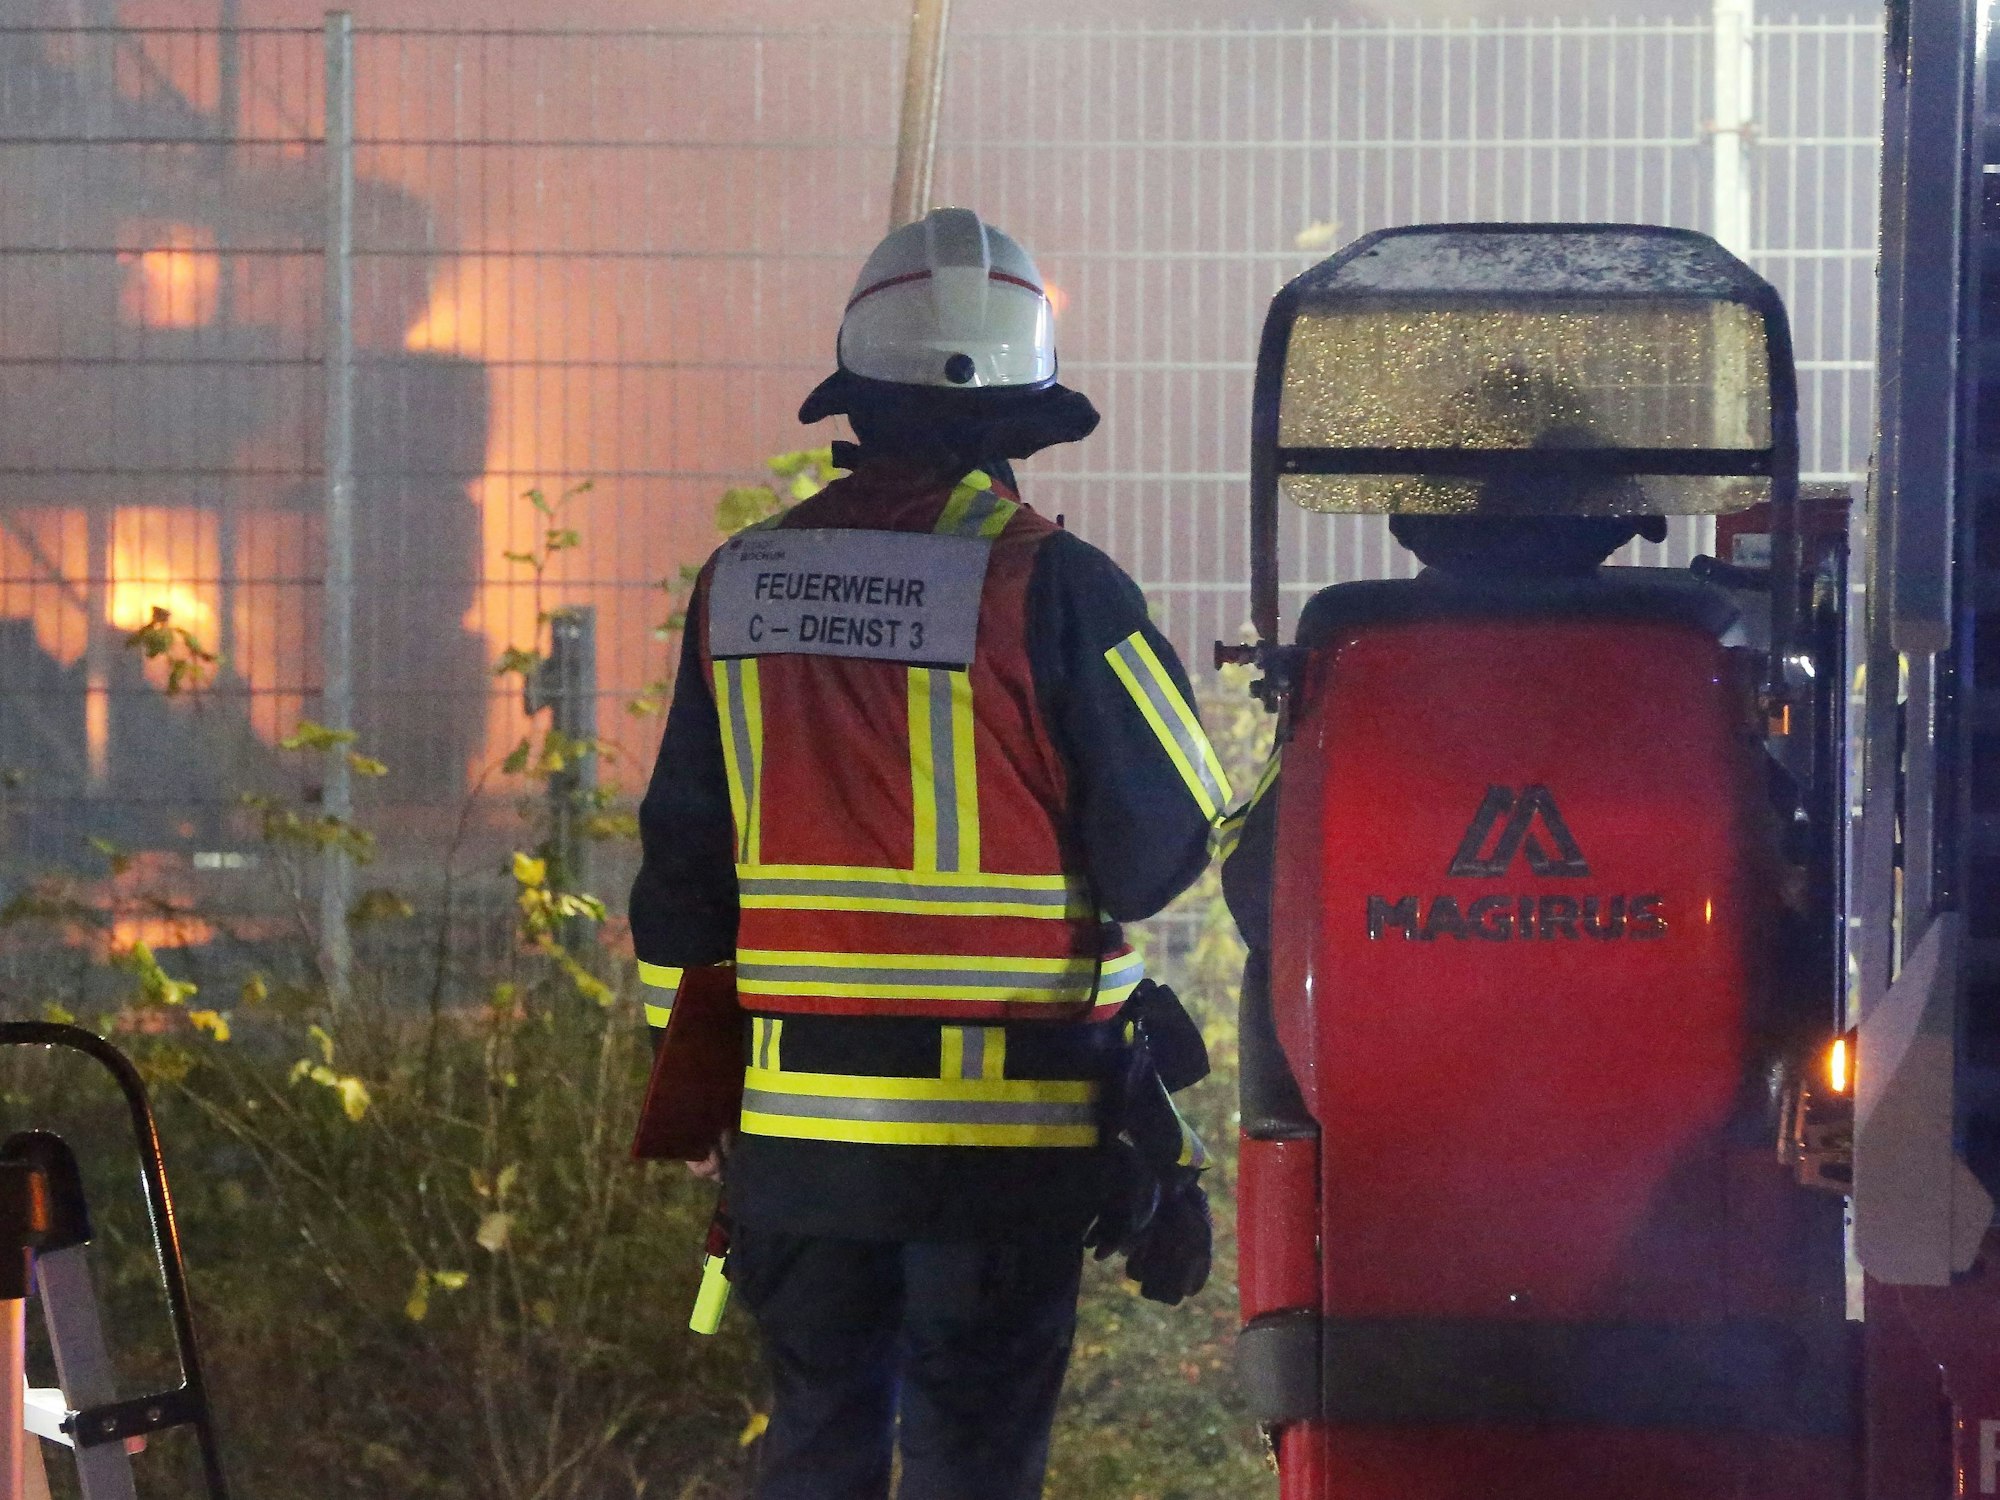 Die Feuerwehr bekämpft einen Großbrand in einer Lagerhalle in Bochum. Die Gewerbehalle einer Baumaschinen-Firma liegt nach Angaben der Polizei unmittelbar neben der Autobahn 40.Aufgrund der starken Rauch- und Flammenentwicklung wurde die Autobahn in Fahrtrichtung Dortmund gesperrt.